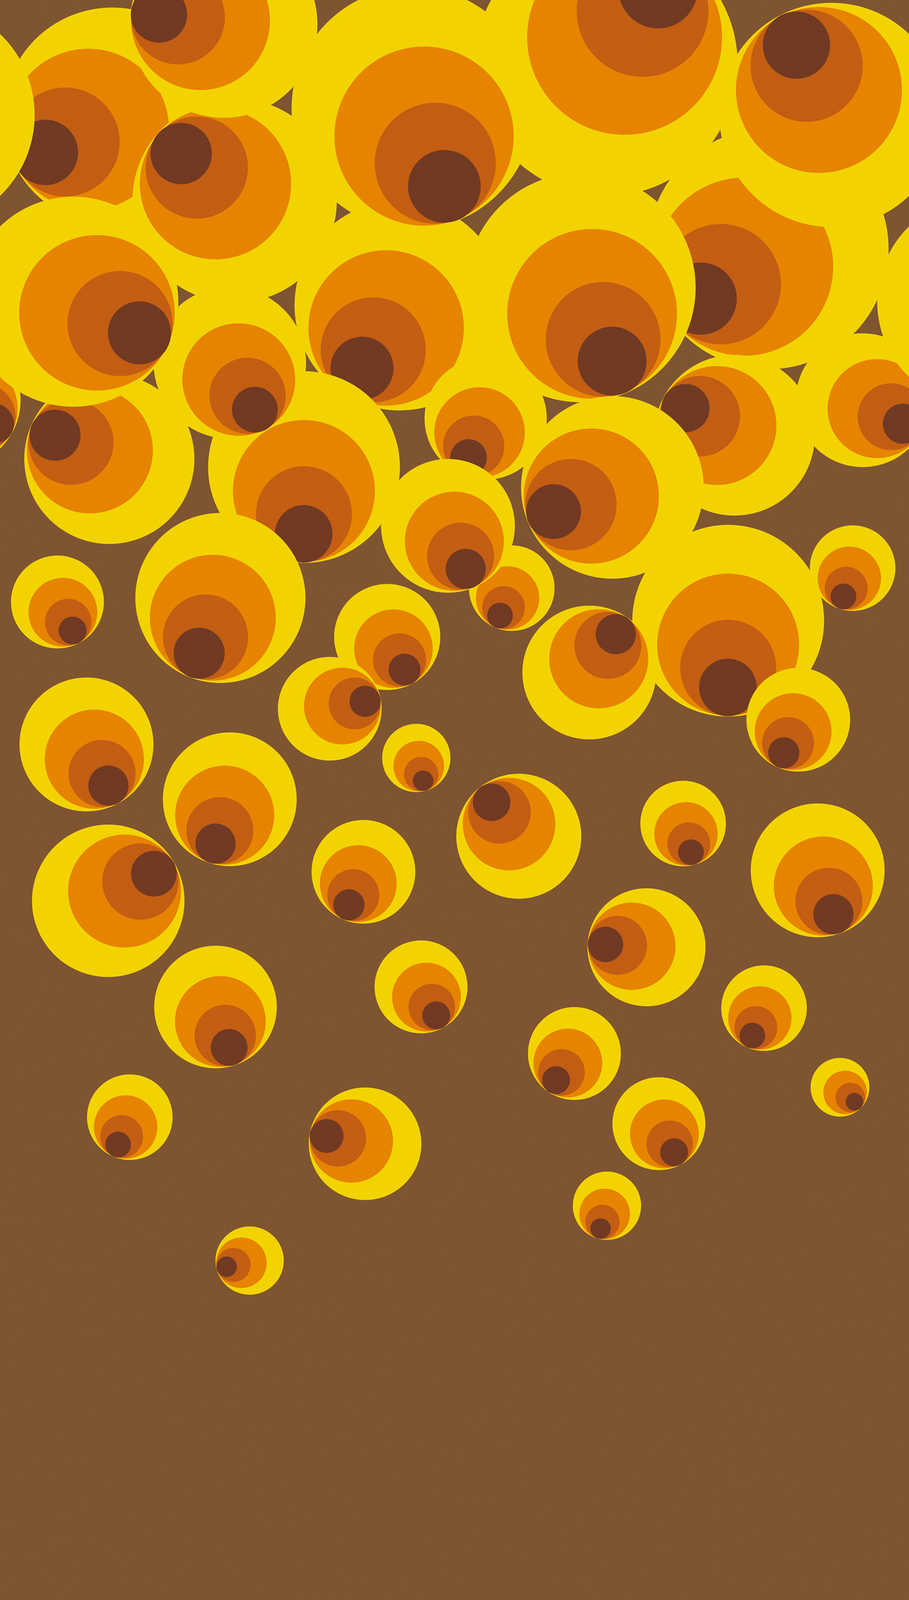             Papel pintado no tejido con motivo de puntos grandes en estilo retro - amarillo, naranja, marrón
        